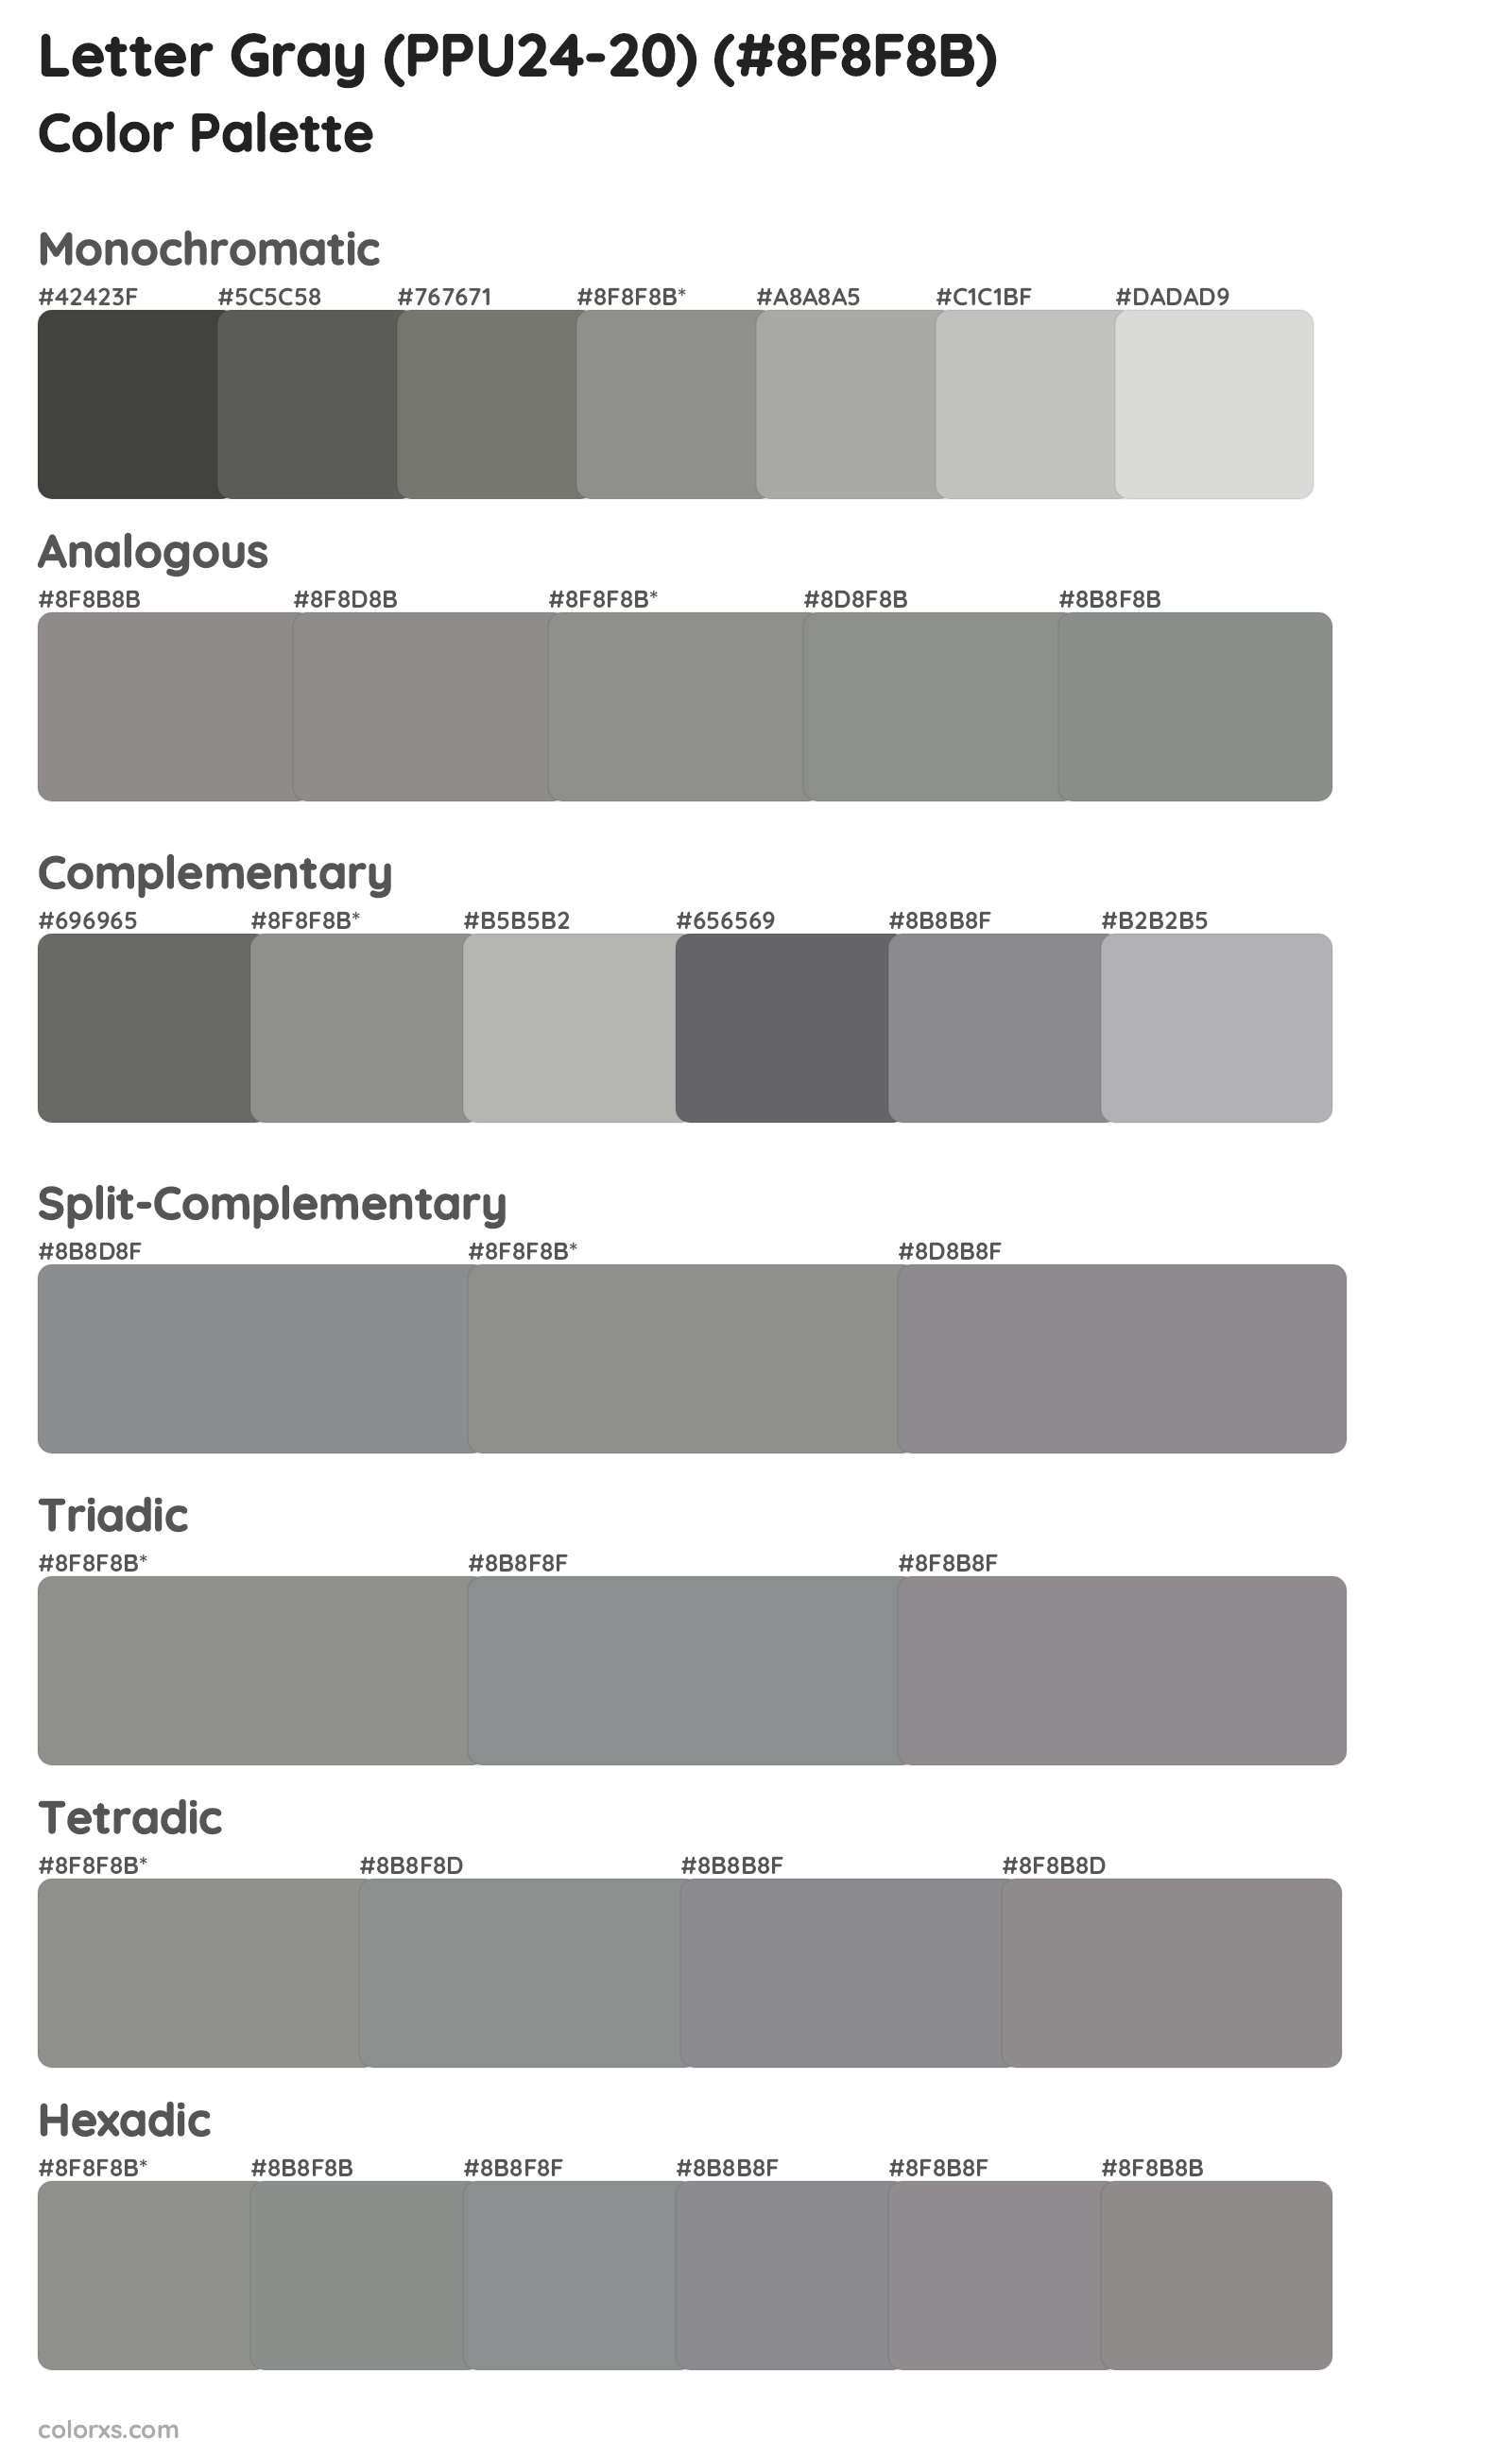 Letter Gray (PPU24-20) Color Scheme Palettes